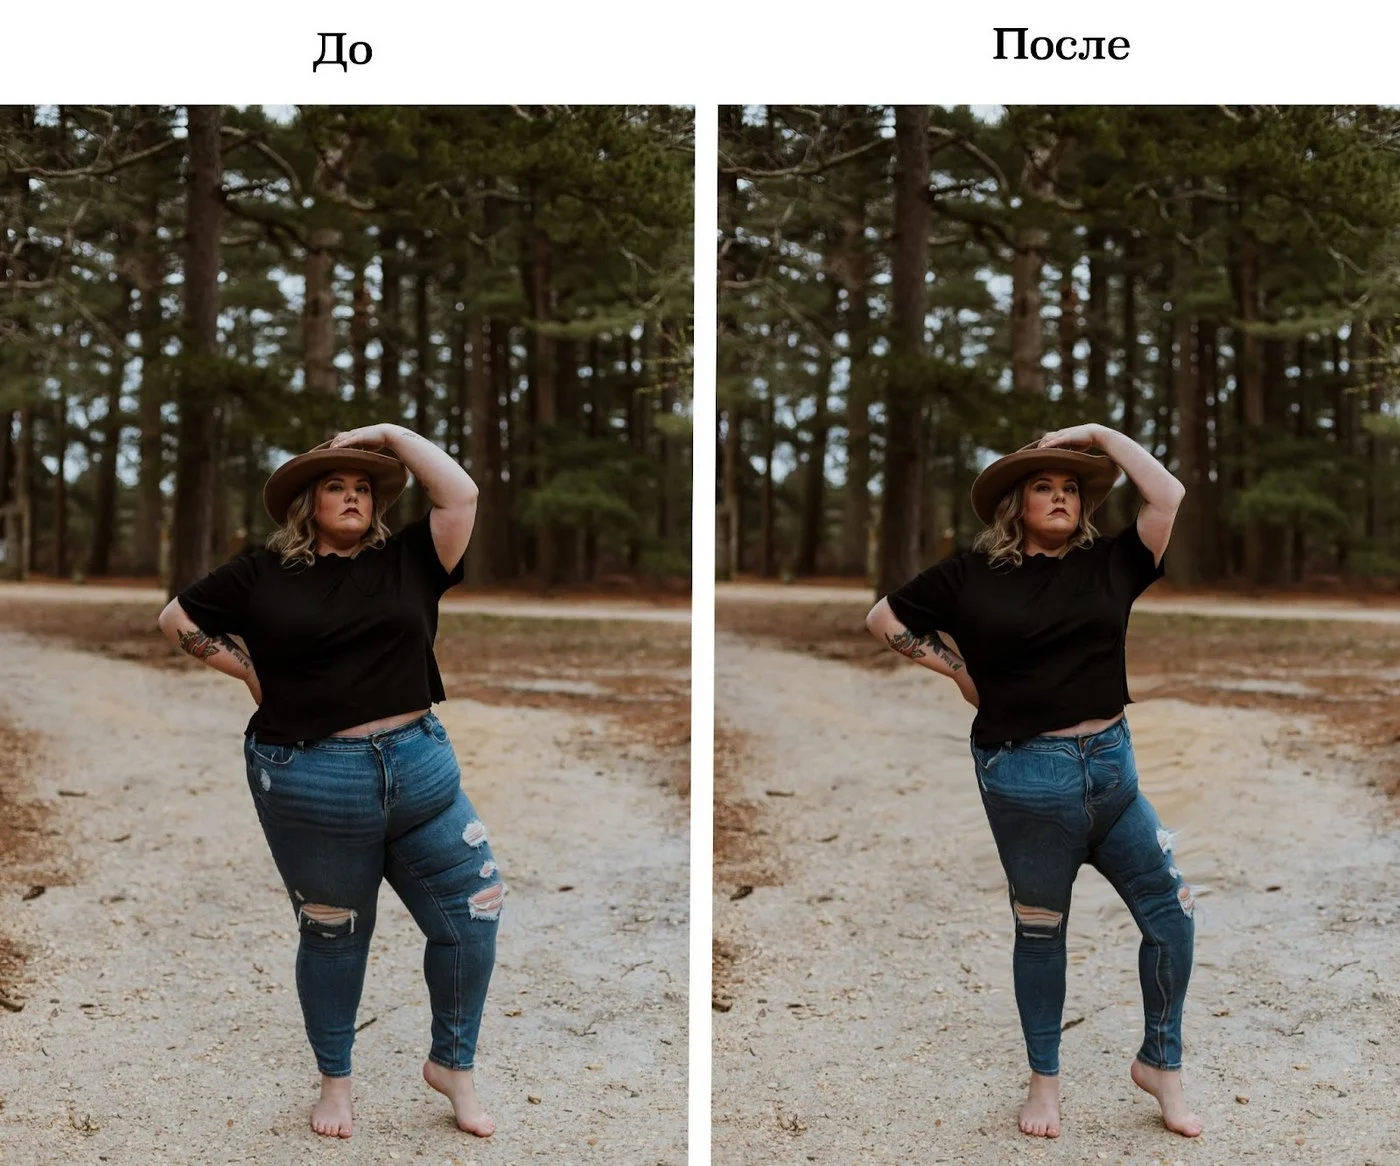 Программа фотошопа как выглядеть при похудении